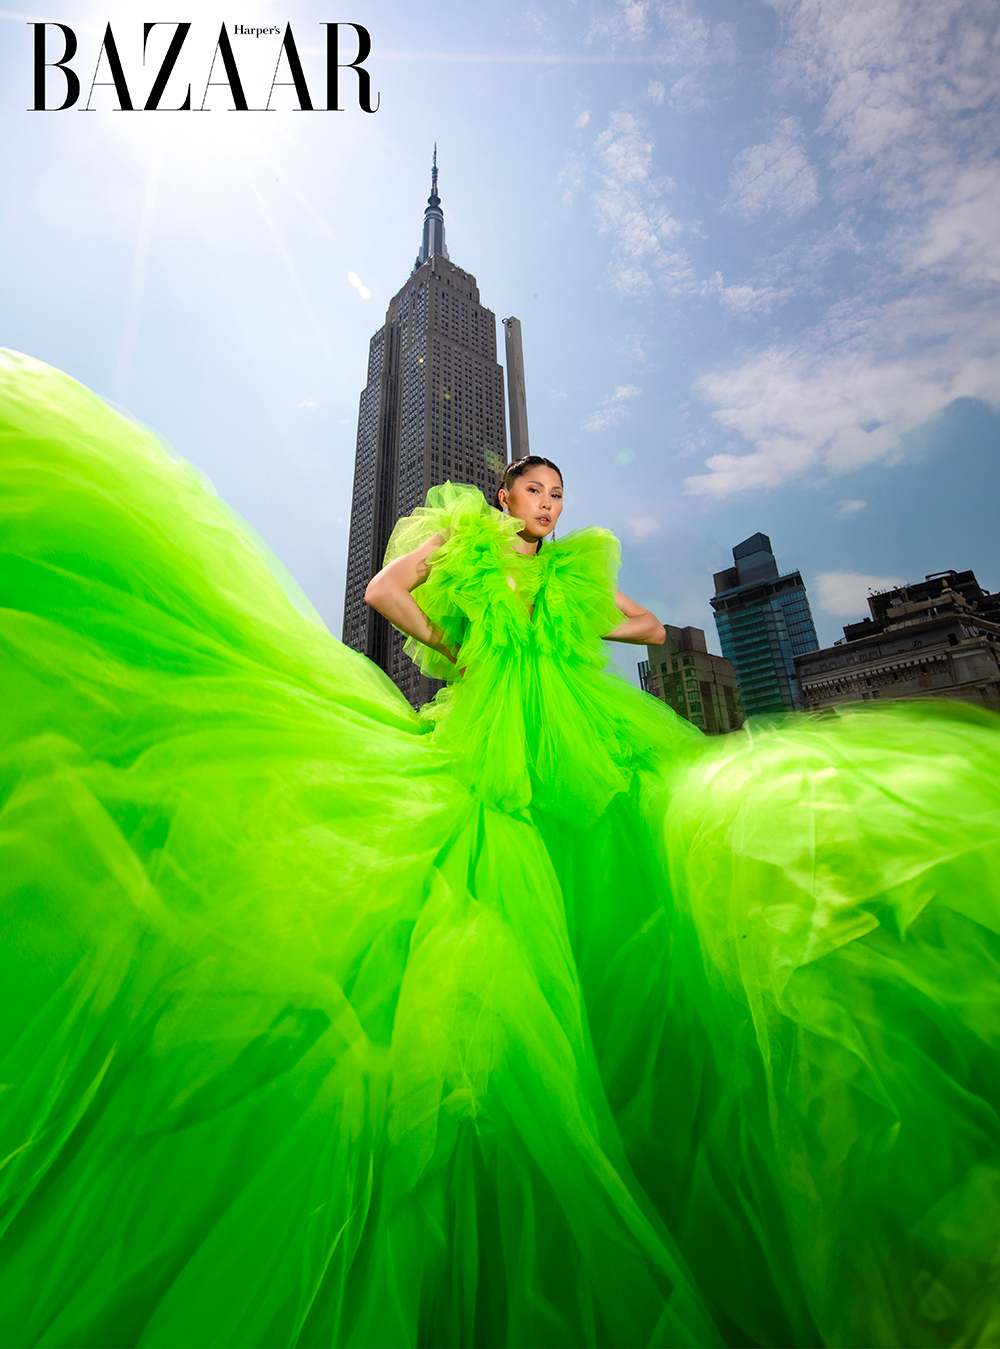 Phong cách của "Nữ thần Tự do" Madina Zhanuzakova trên bầu trời New York 1